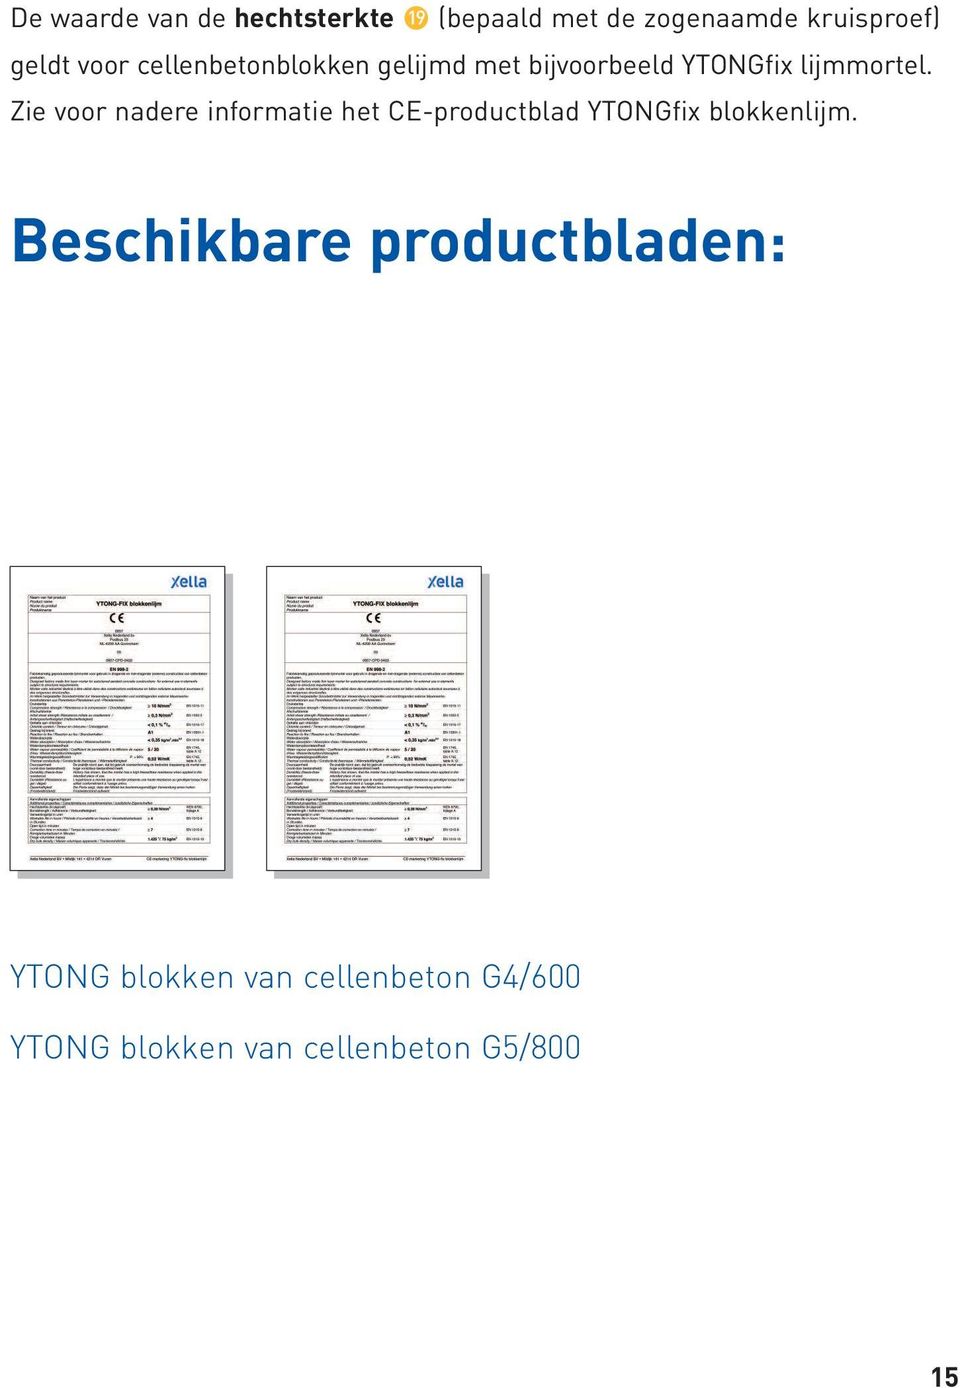 Zie voor nadere informatie het CE-productblad YTONGfix blokkenlijm.